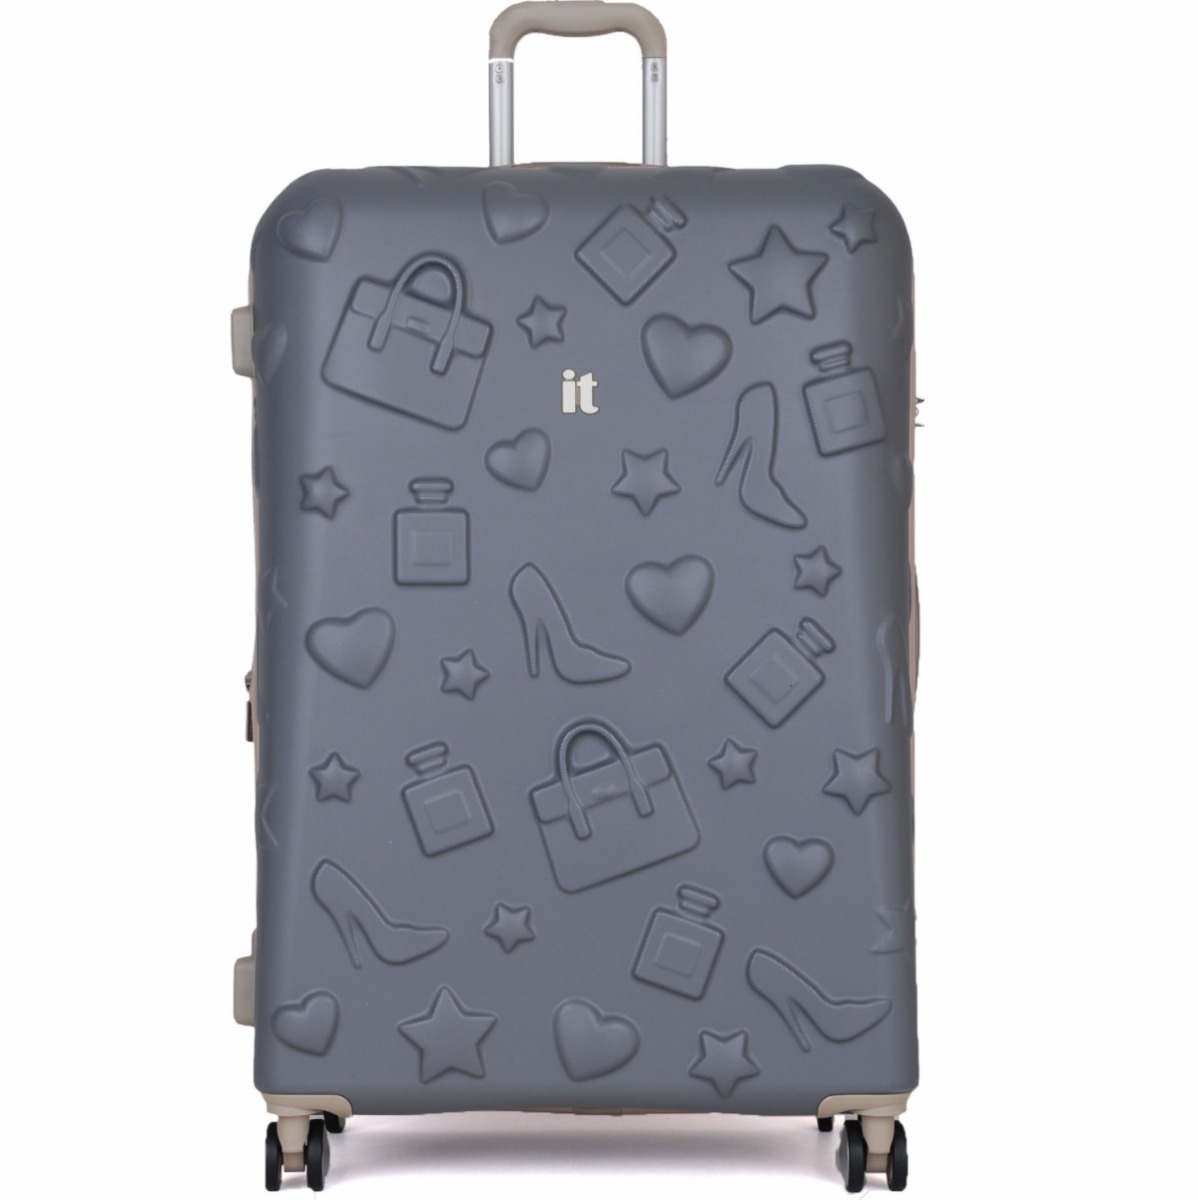 Flo Unisex IT Luggage Girl Essentials Büyük Boy Valiz 16-2240-08. 3